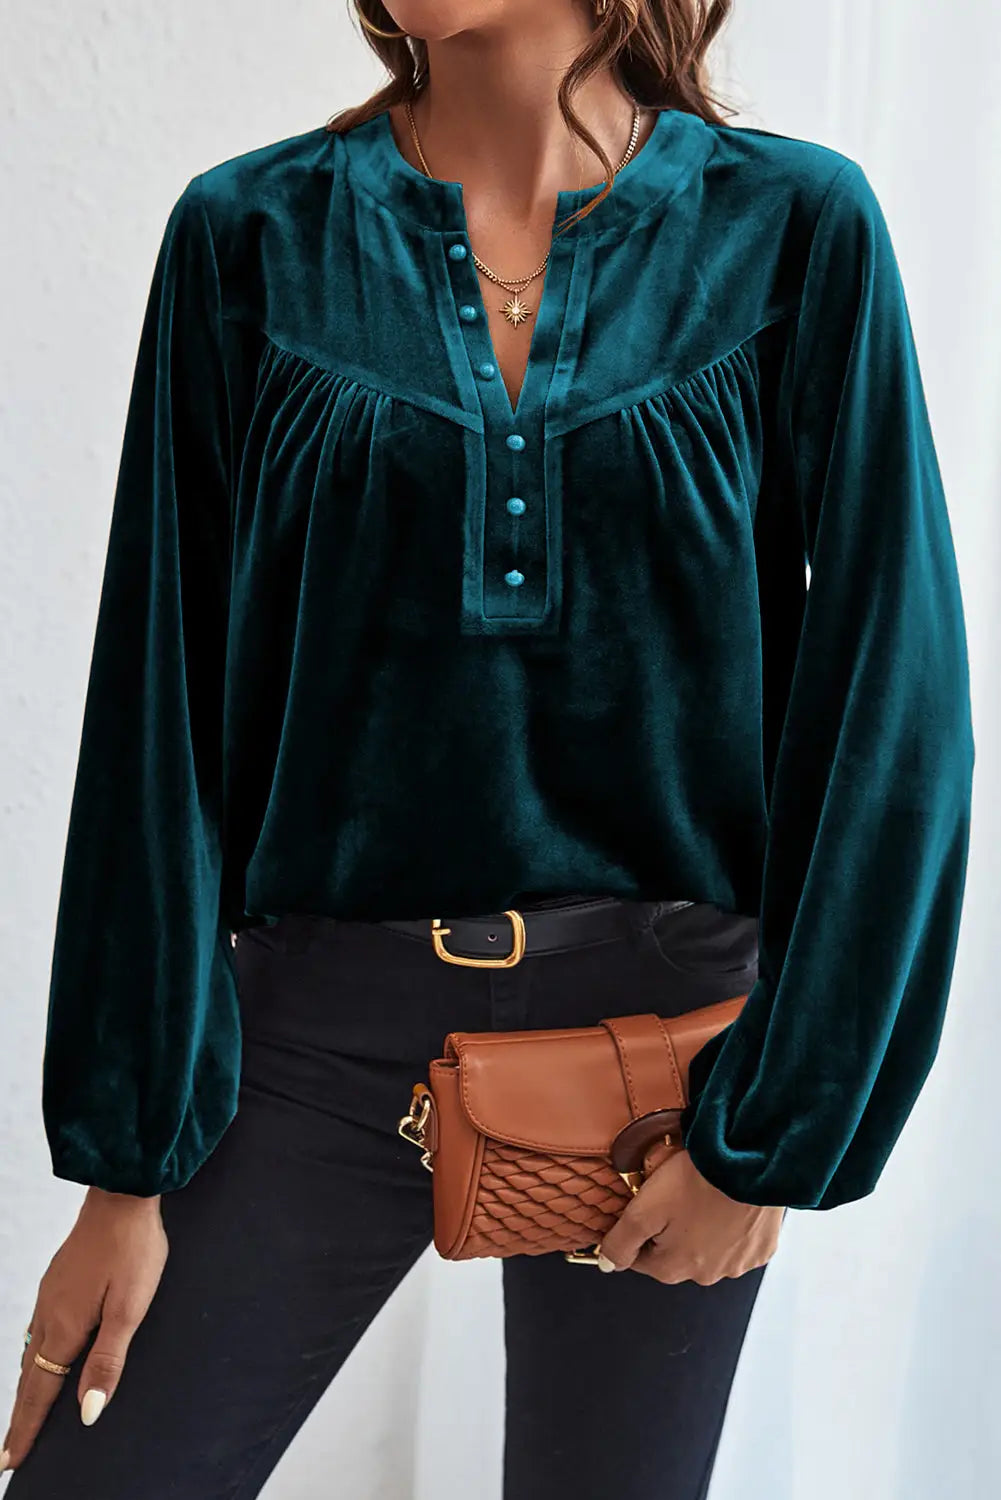 Skobeloff lantern sleeve beaded split v neck velvet top - blouses & shirts